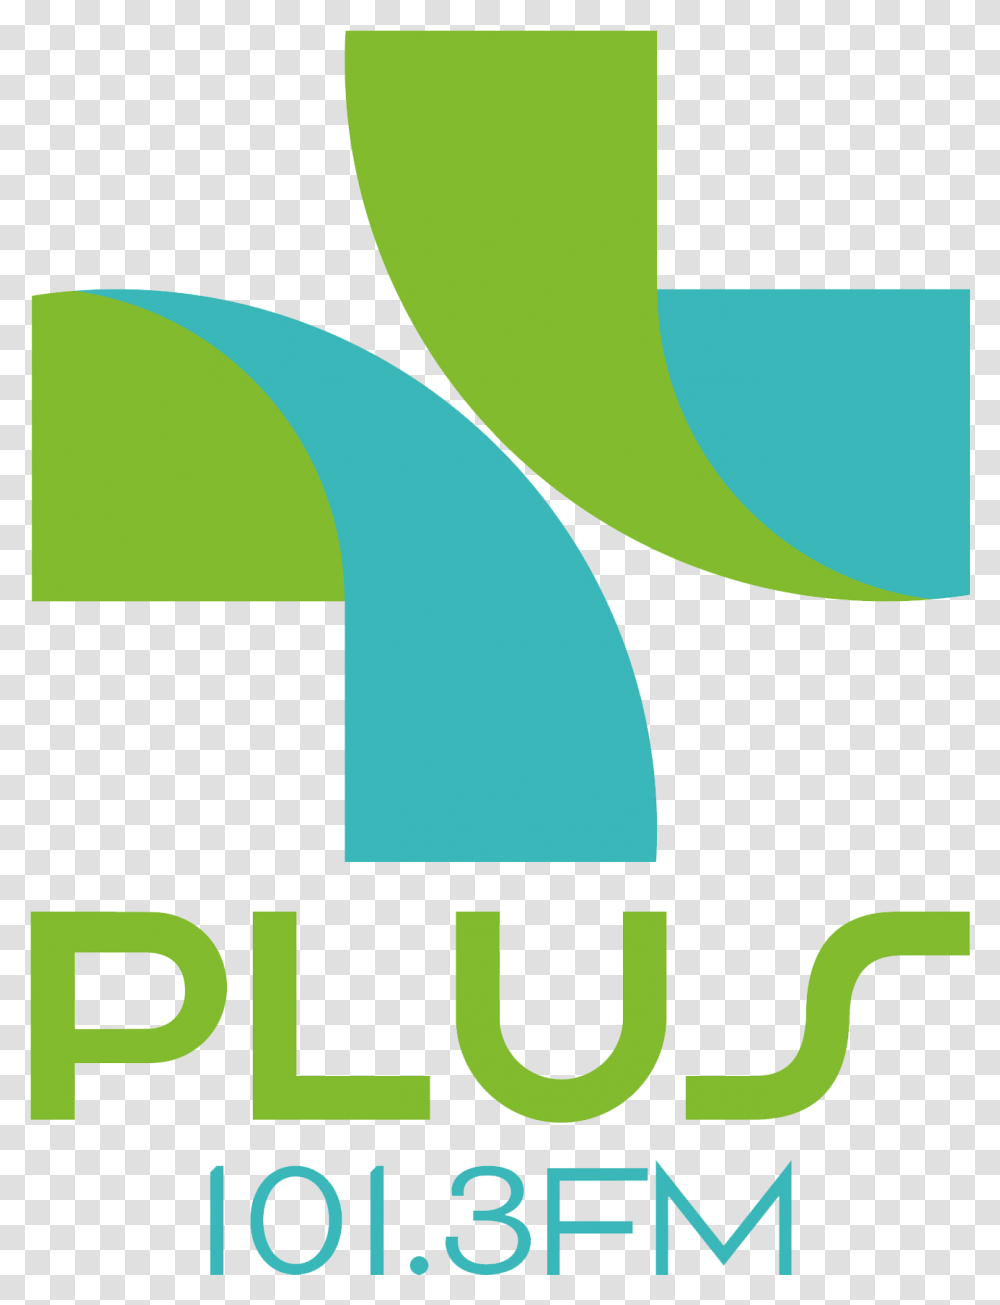 Inicio 101.3 Fm Plus El Salvador, Logo Transparent Png